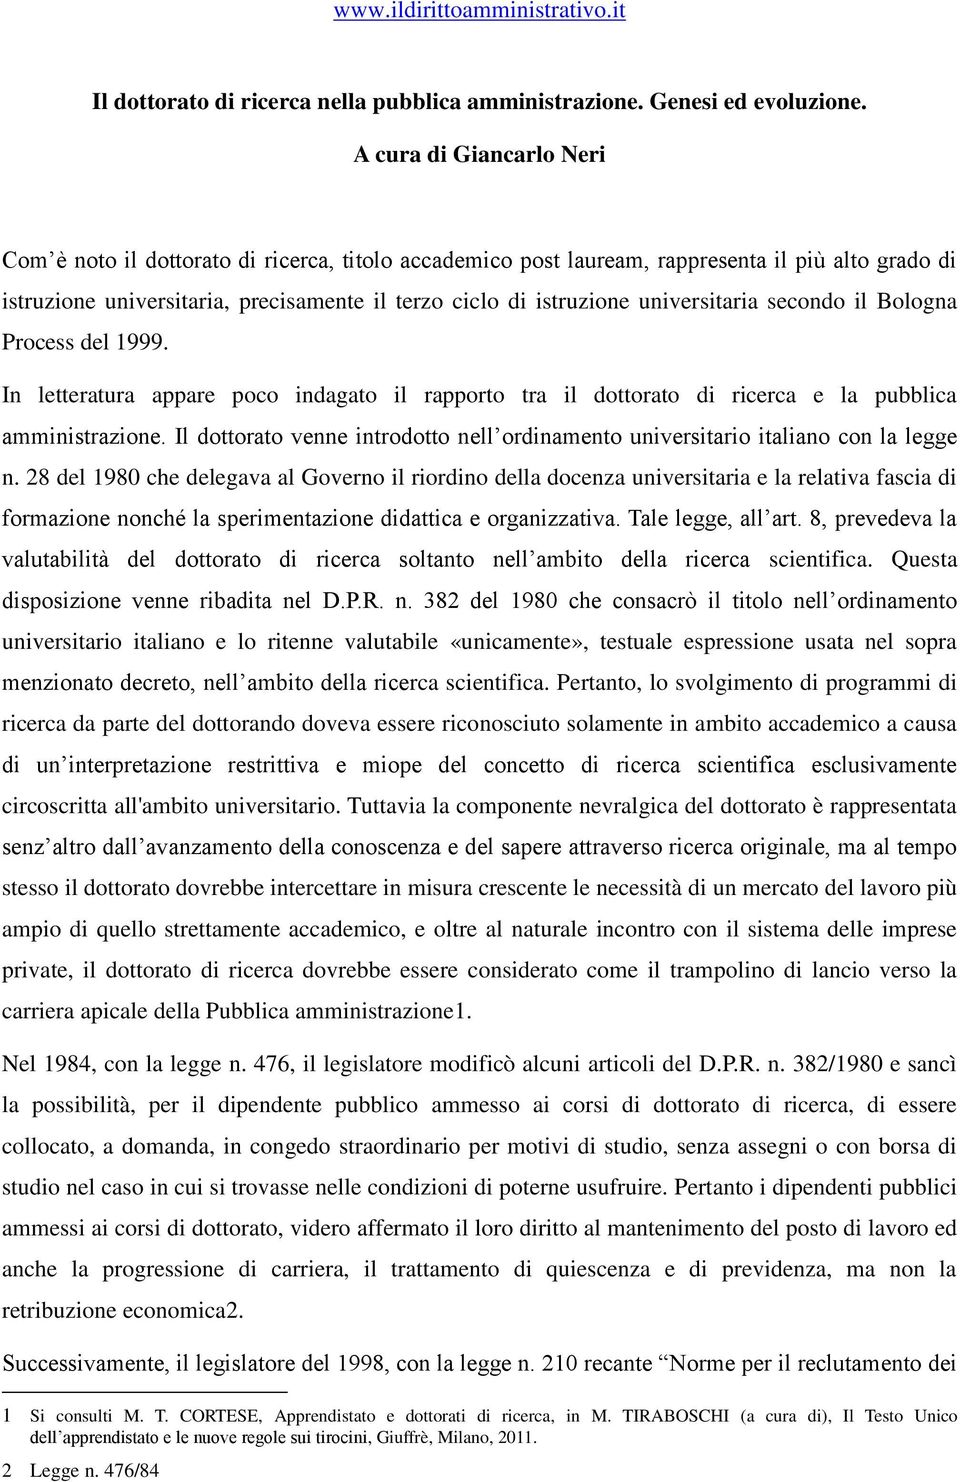 universitaria secondo il Bologna Process del 1999. In letteratura appare poco indagato il rapporto tra il dottorato di ricerca e la pubblica amministrazione.